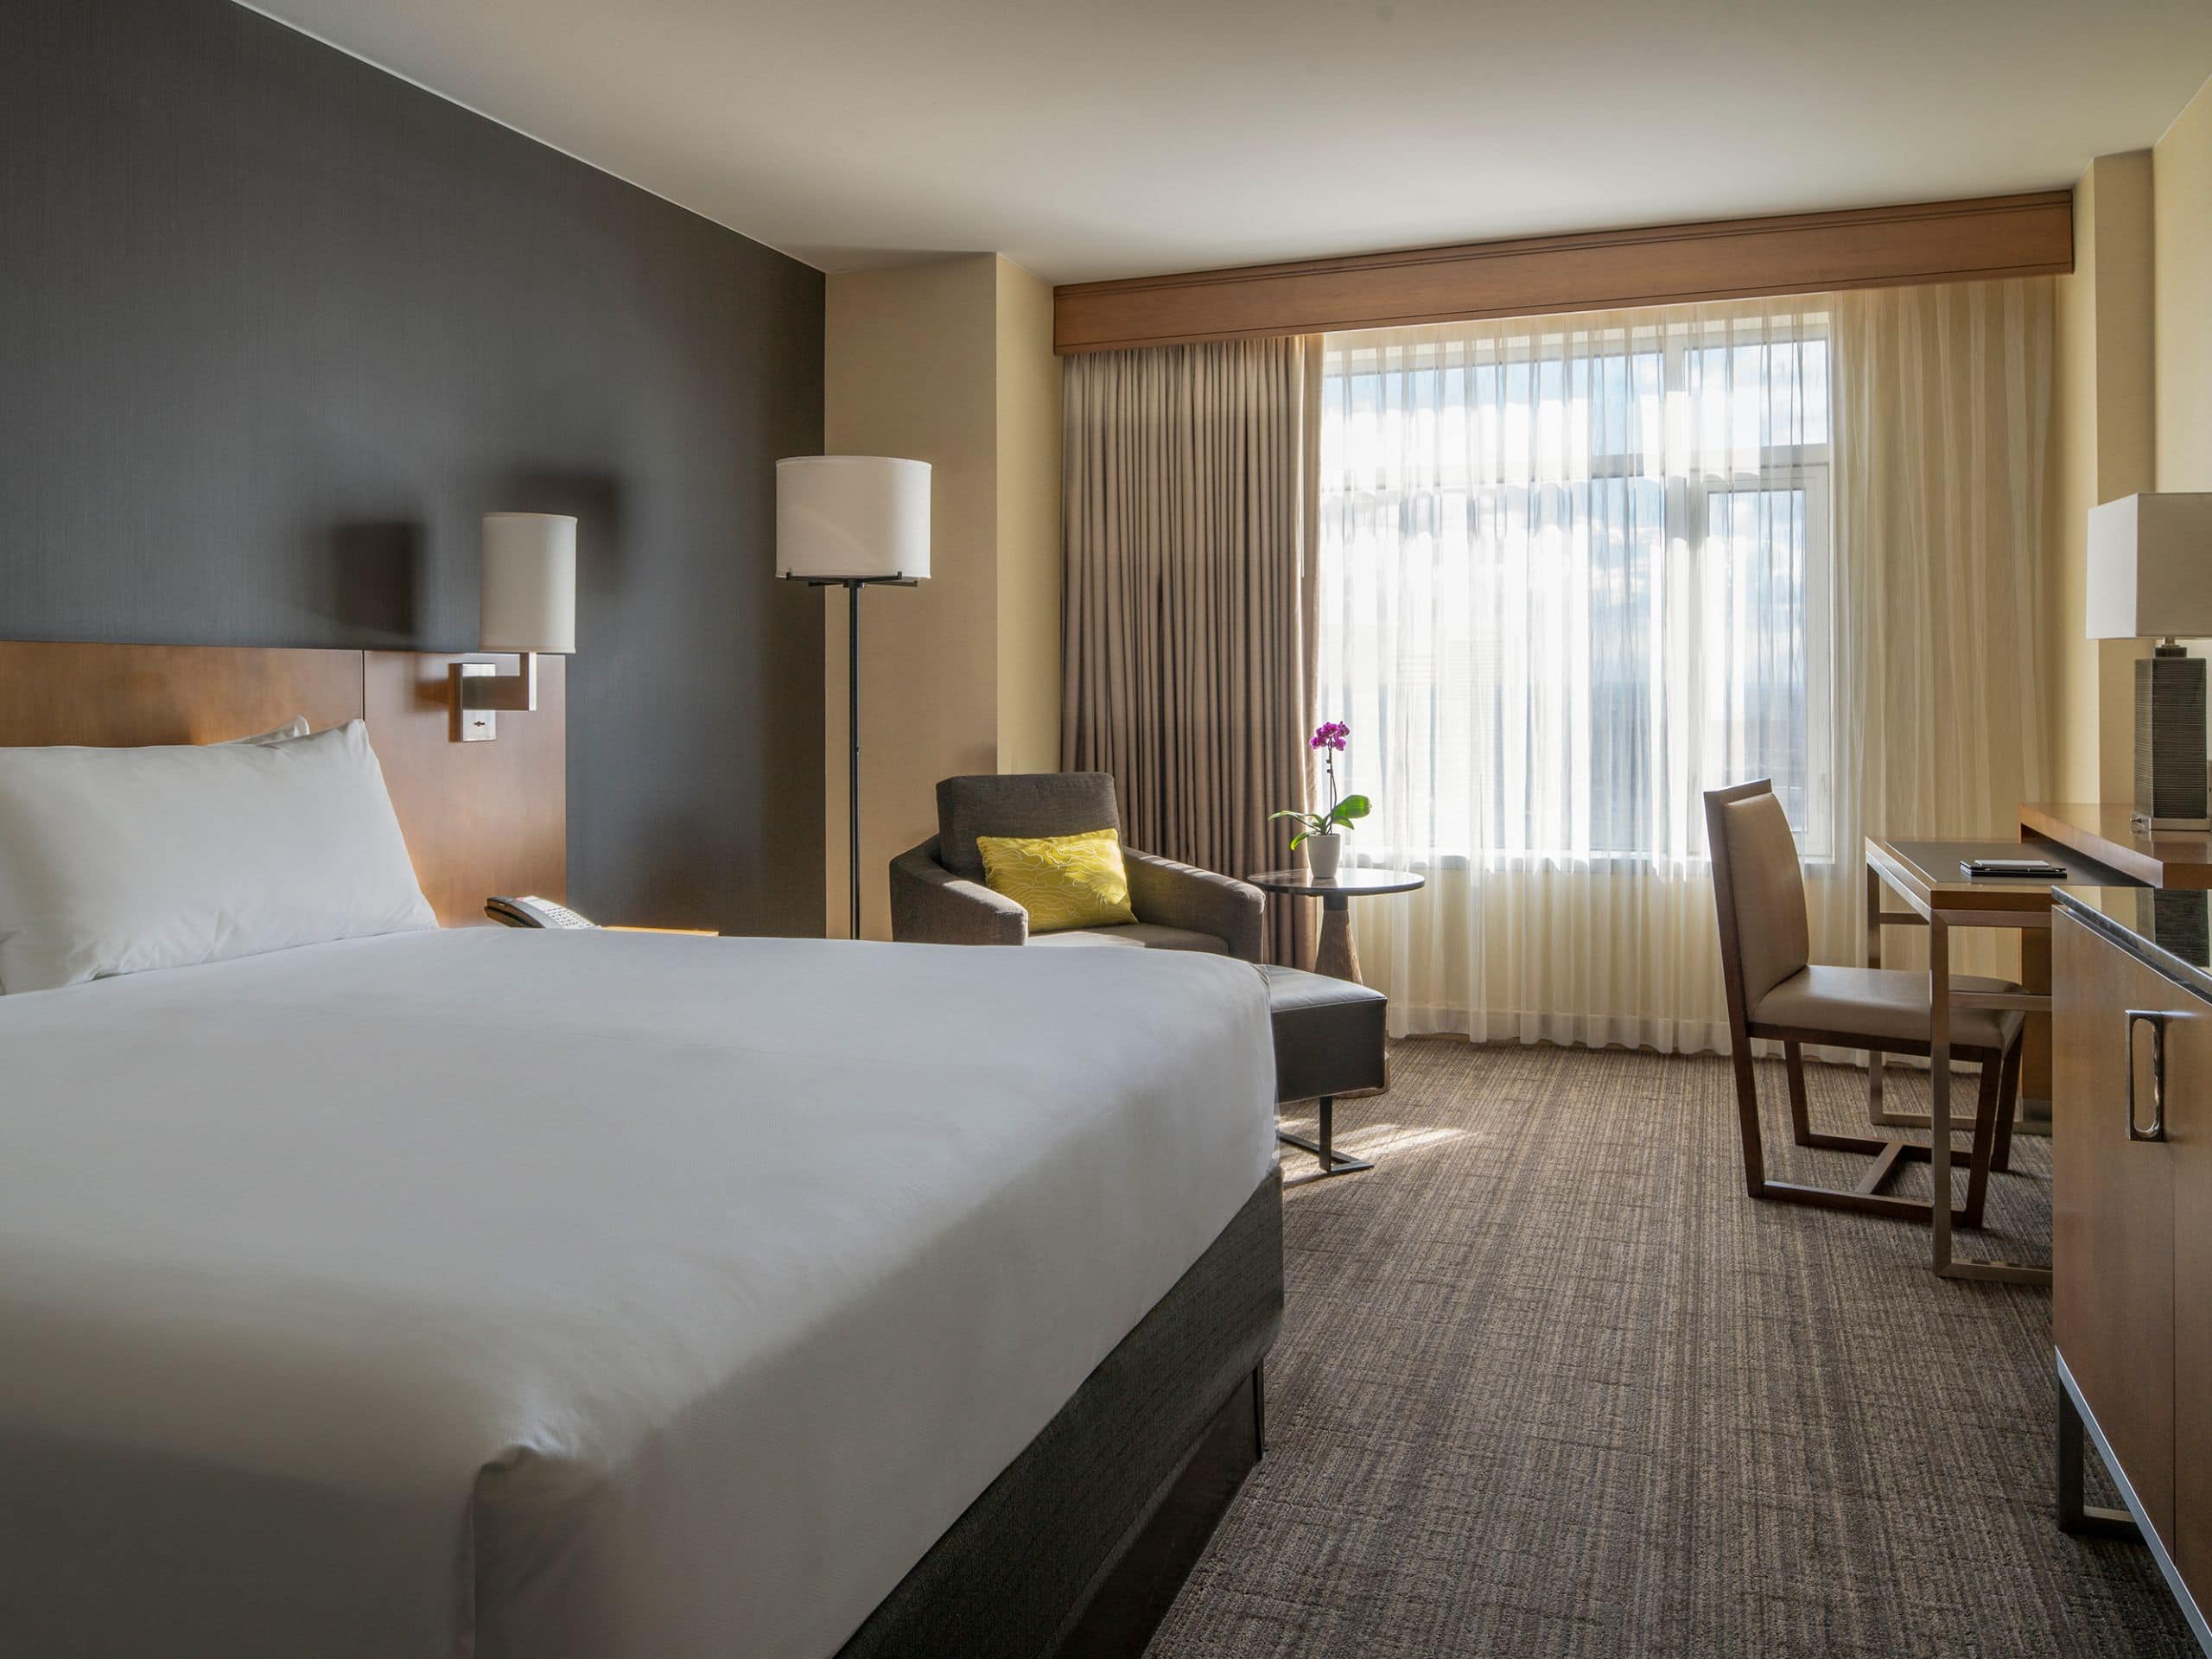 ADA hotel room at Hyatt Regency Denver